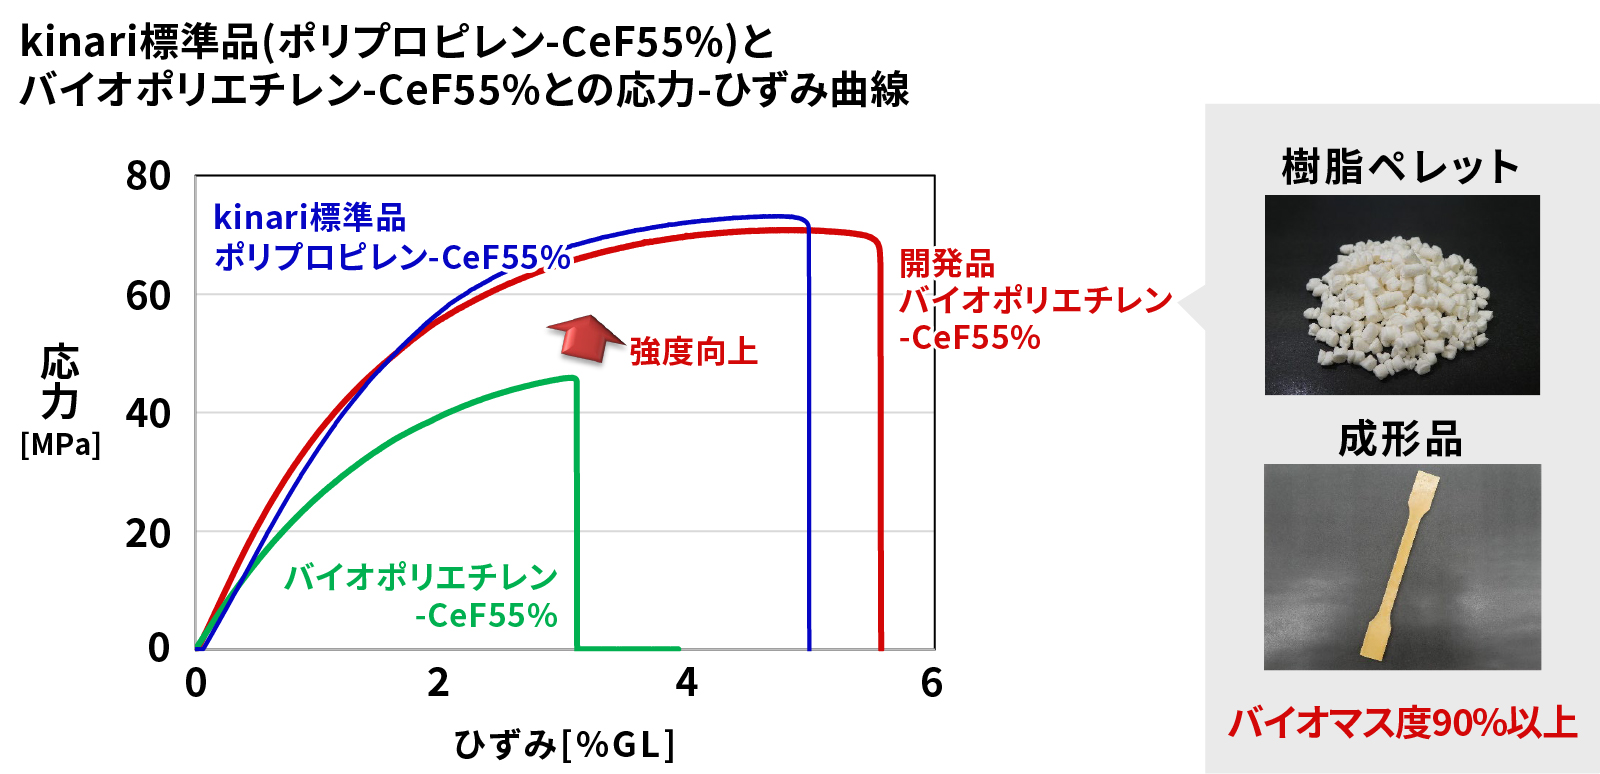 グラフ：kinari標準品（ポリプロピレン-CeF55%）とバイオポリエチレン-CeF55%との応力-ひずみ曲線